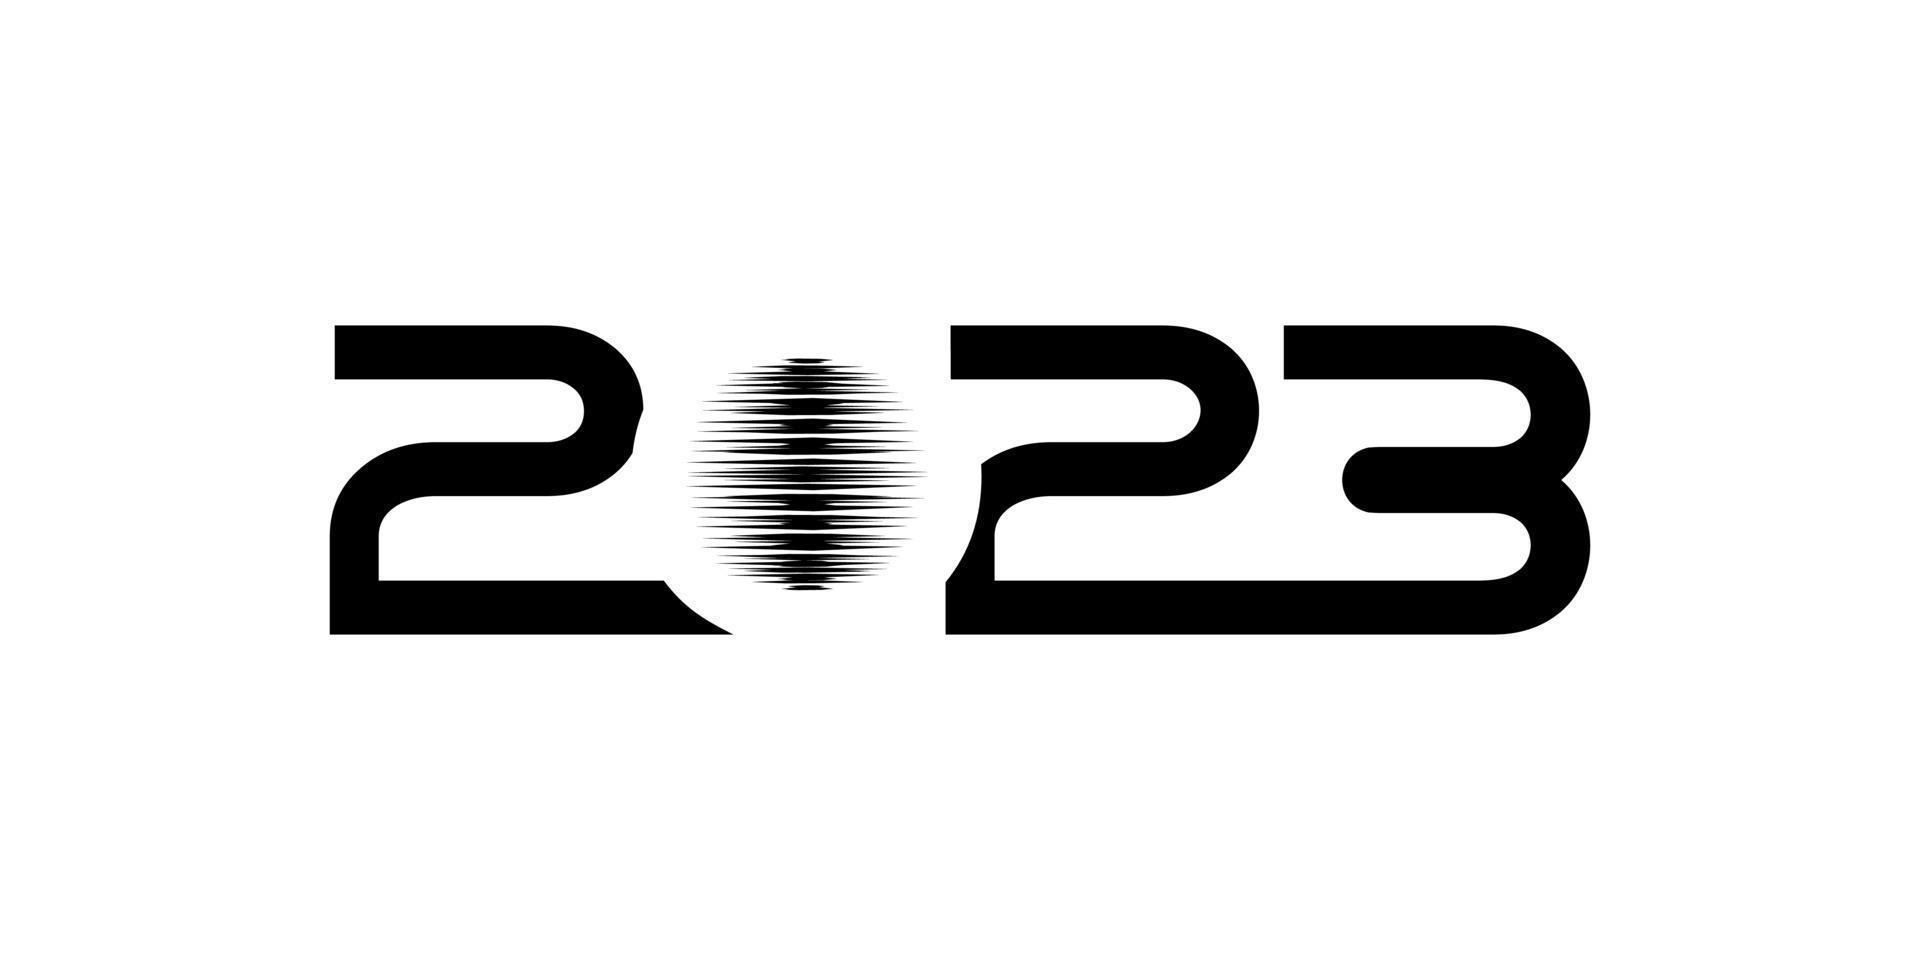 feliz año nuevo 2023 ilustración de diseño para diseño de calendario, sitio web, noticias, contenido, infografía o elemento de diseño gráfico. ilustración vectorial vector